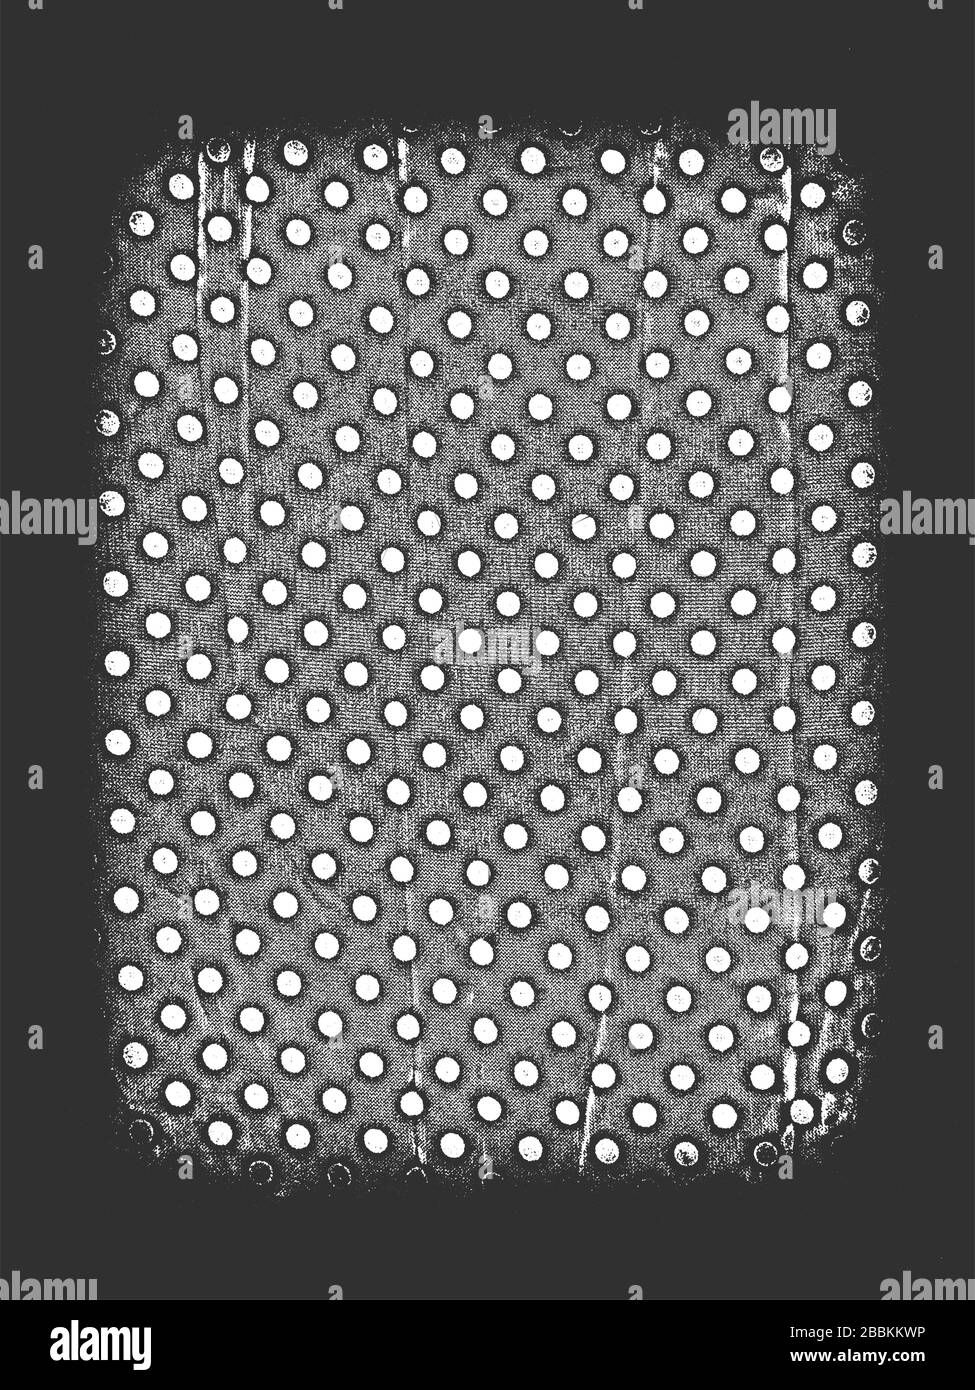 Distress grunge trama vettoriale di tessuto con polka punto ornamento e vignette. Sfondo bianco e nero. Illustrazione EPS 8 Illustrazione Vettoriale